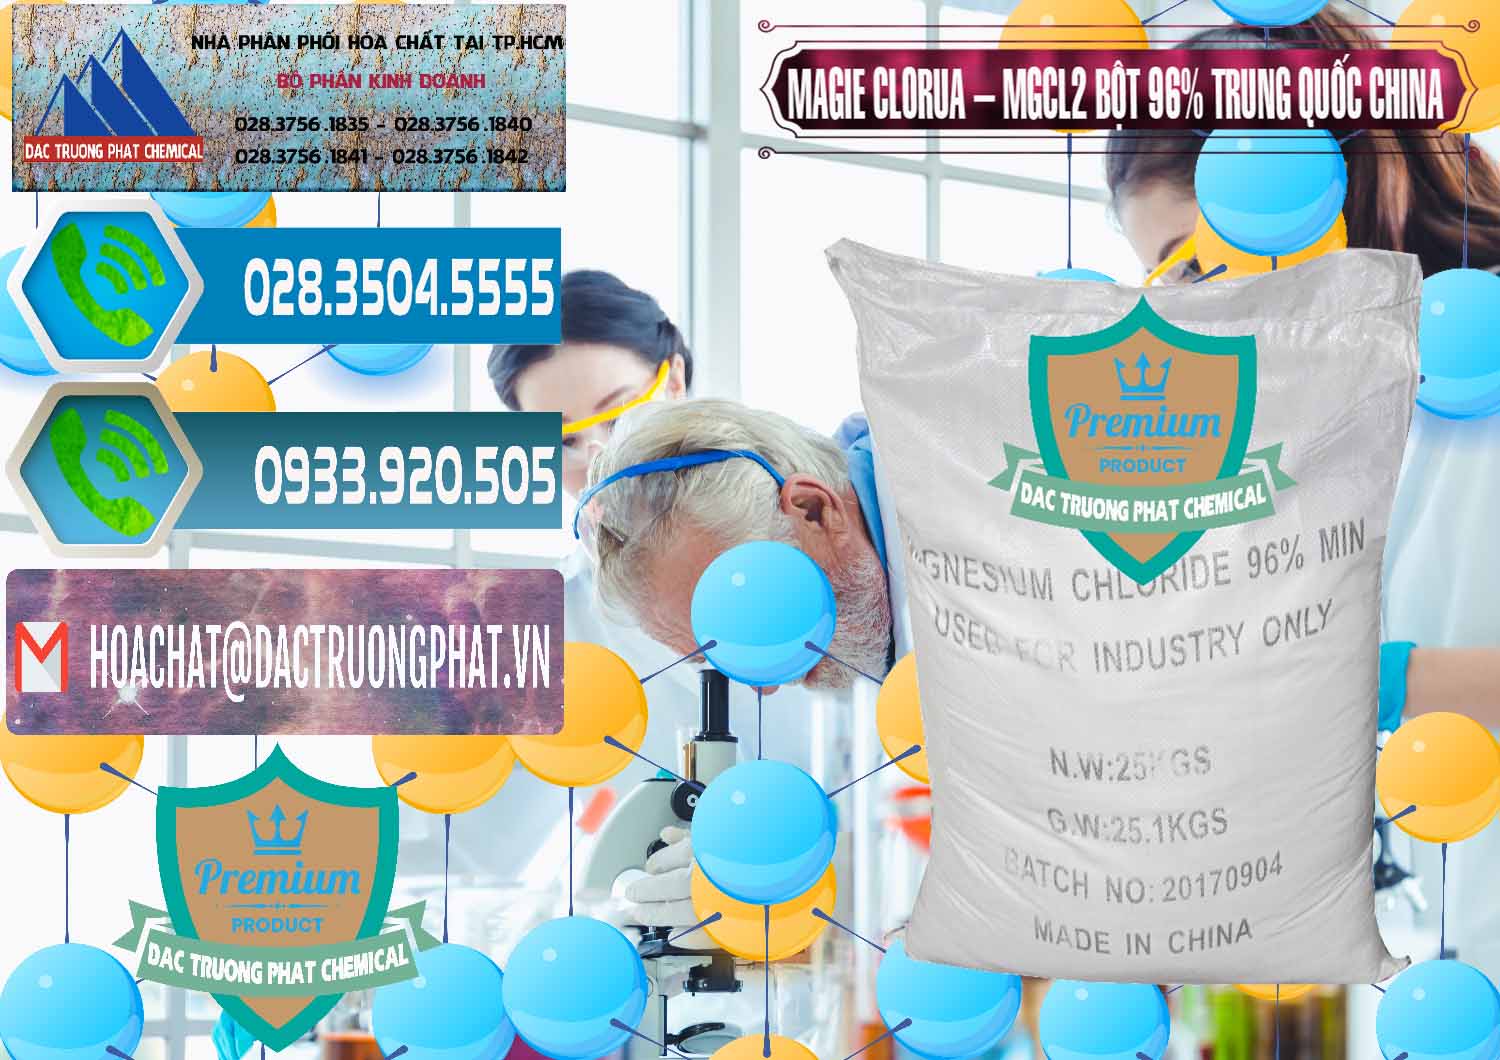 Chuyên kinh doanh - bán Magie Clorua – MGCL2 96% Dạng Bột Bao Chữ Đen Trung Quốc China - 0205 - Công ty chuyên kinh doanh và cung cấp hóa chất tại TP.HCM - congtyhoachat.net